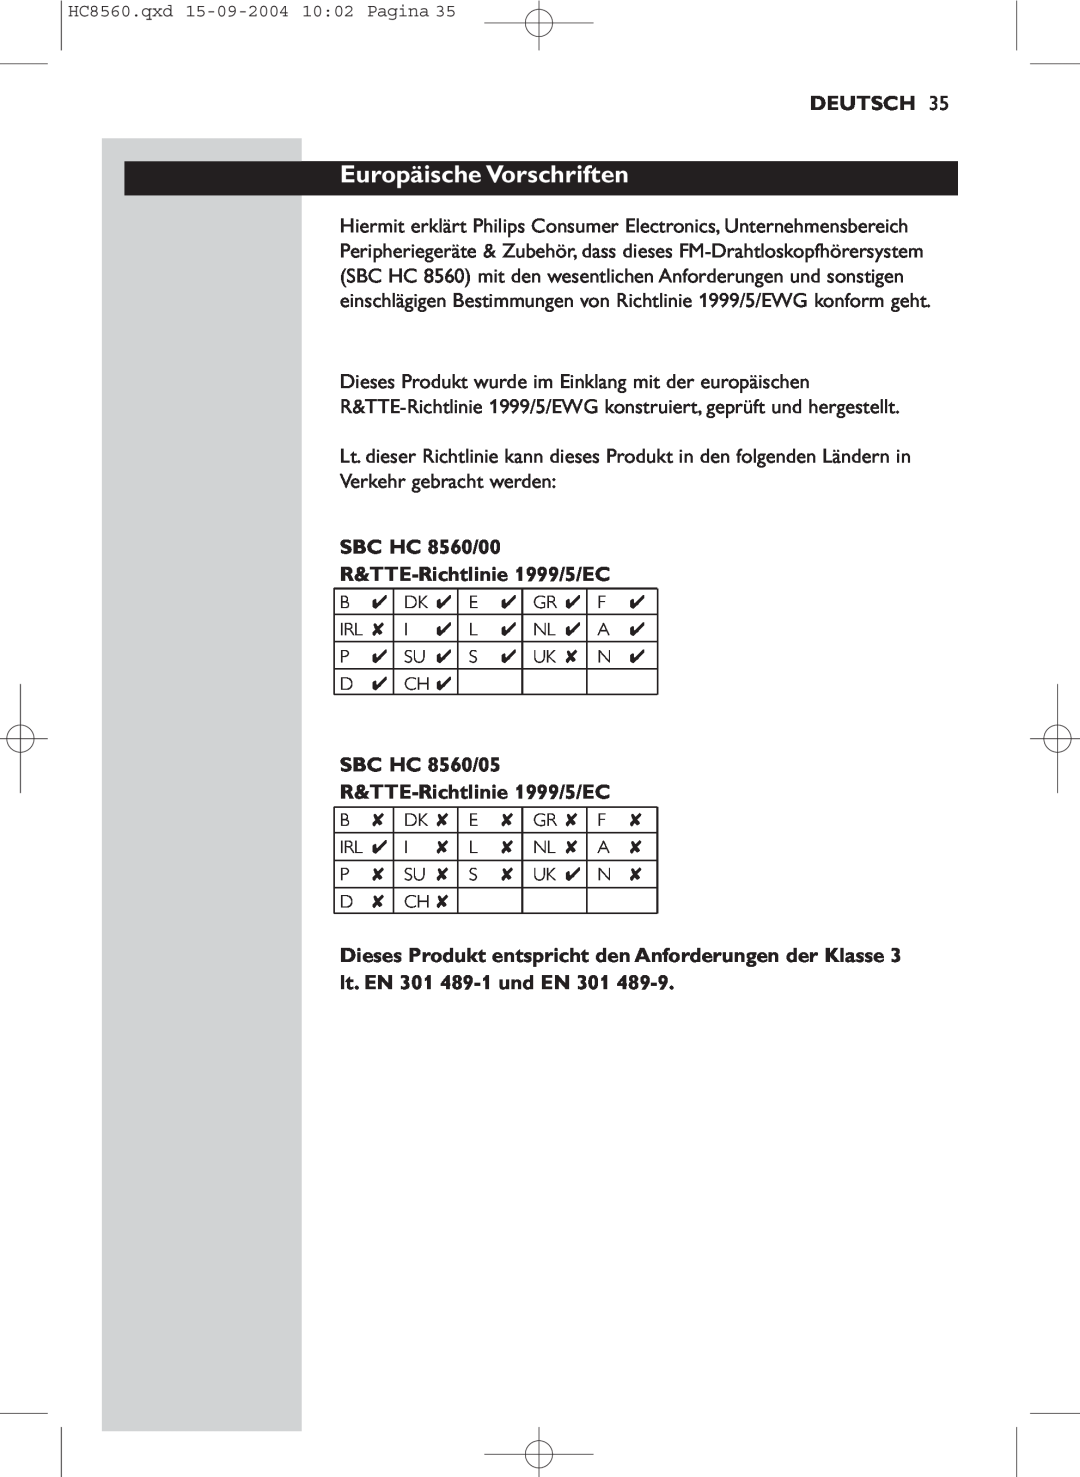 Philips manual Europäische Vorschriften, Deutsch, SBC HC 8560/00 R&TTE-Richtlinie1999/5/EC 